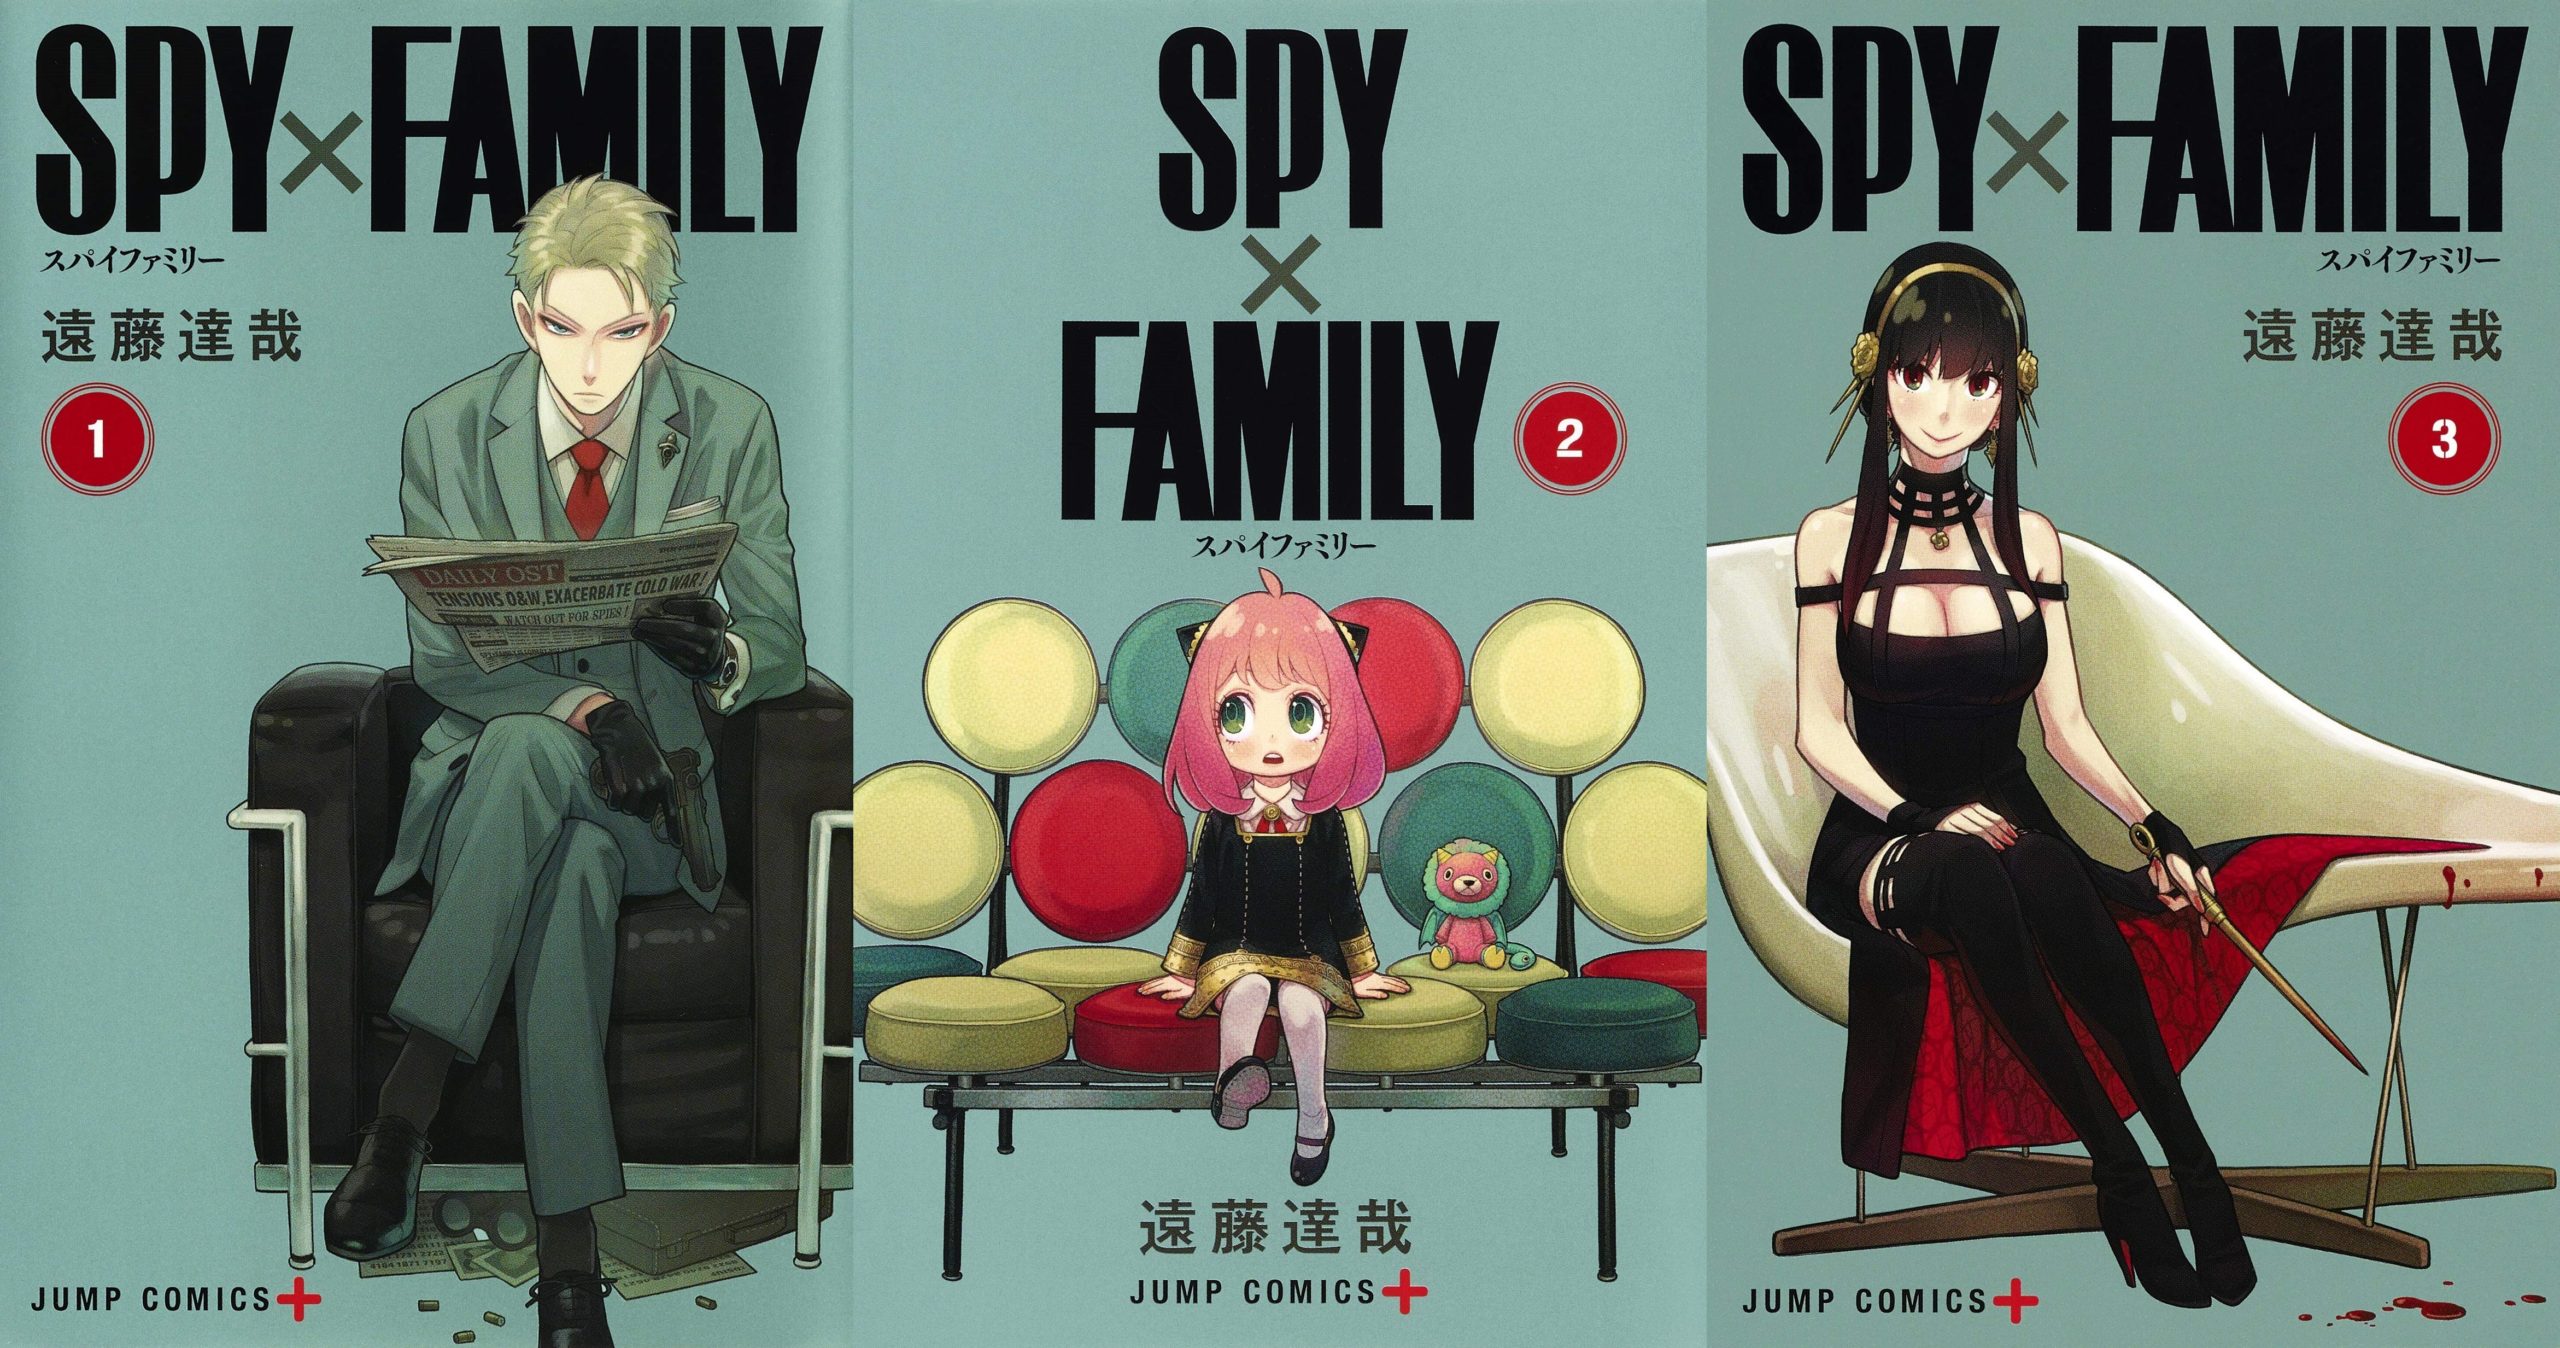 Spy x Family: Por que você deveria assistir ao próximo anime da temporada?